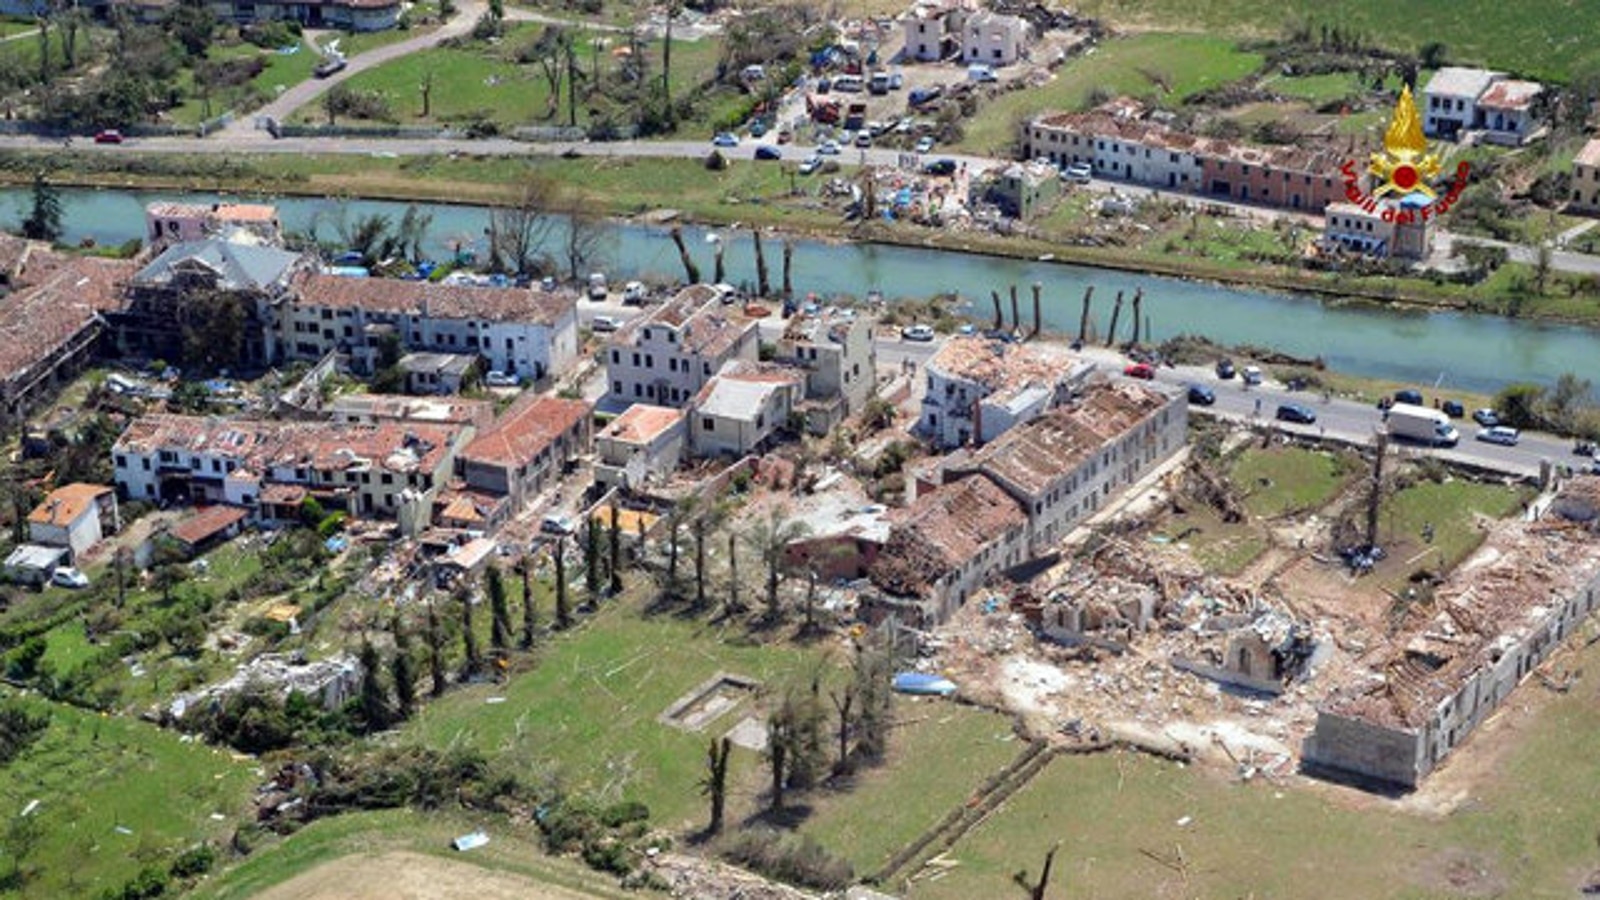 La rinascita dopo il tornado sulla Riviera del Brenta - Cronaca - TGR Veneto